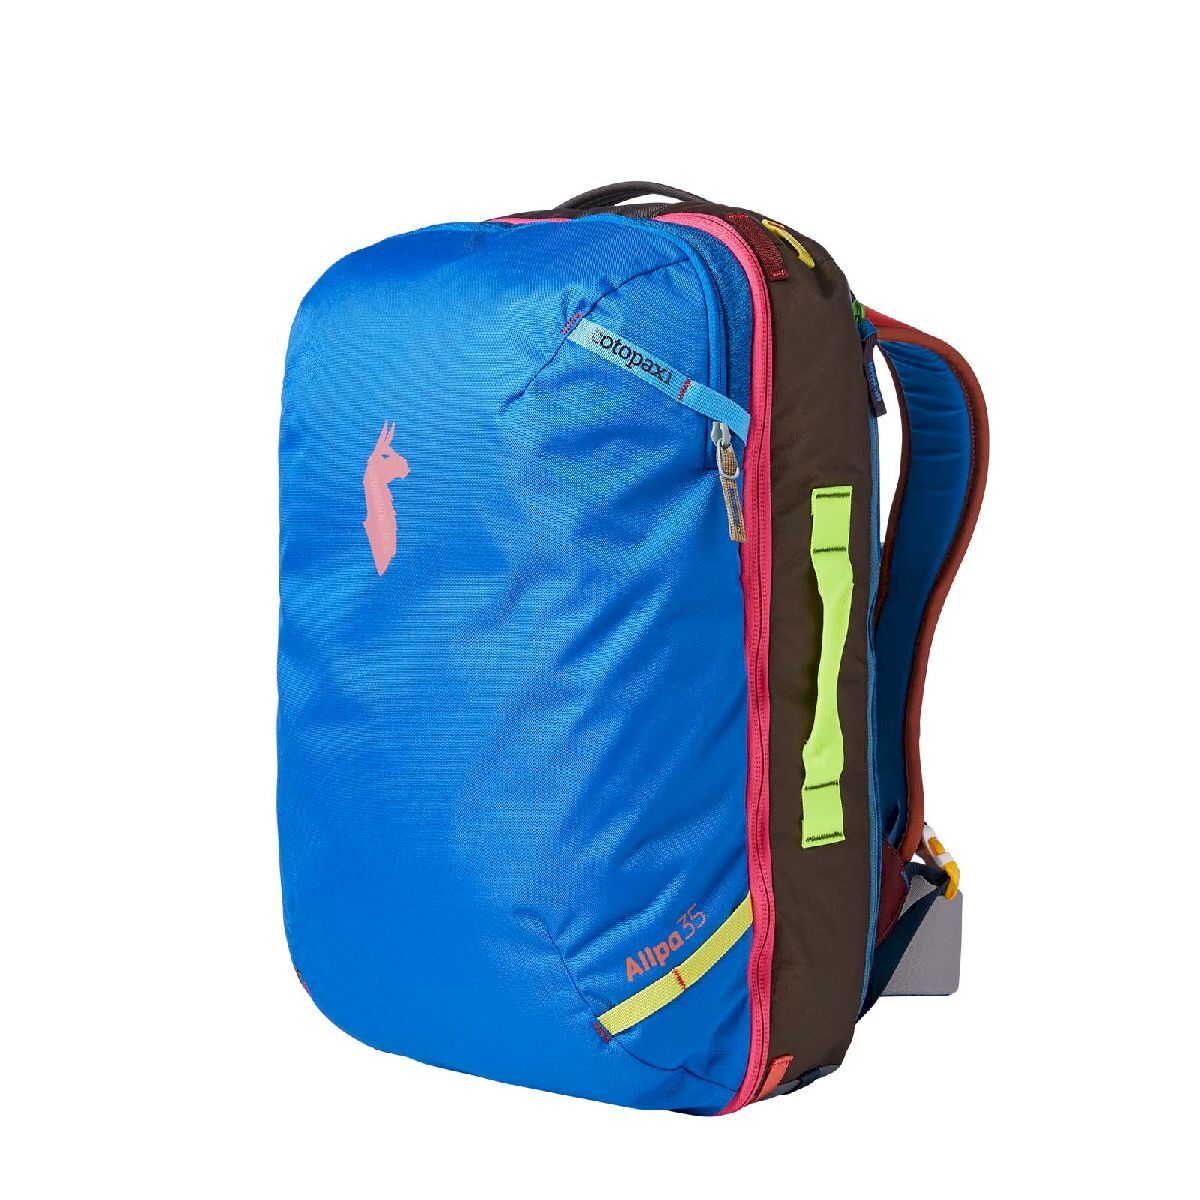 Cotopaxi Allpa 35L Travel Pack - Cestovní batoh